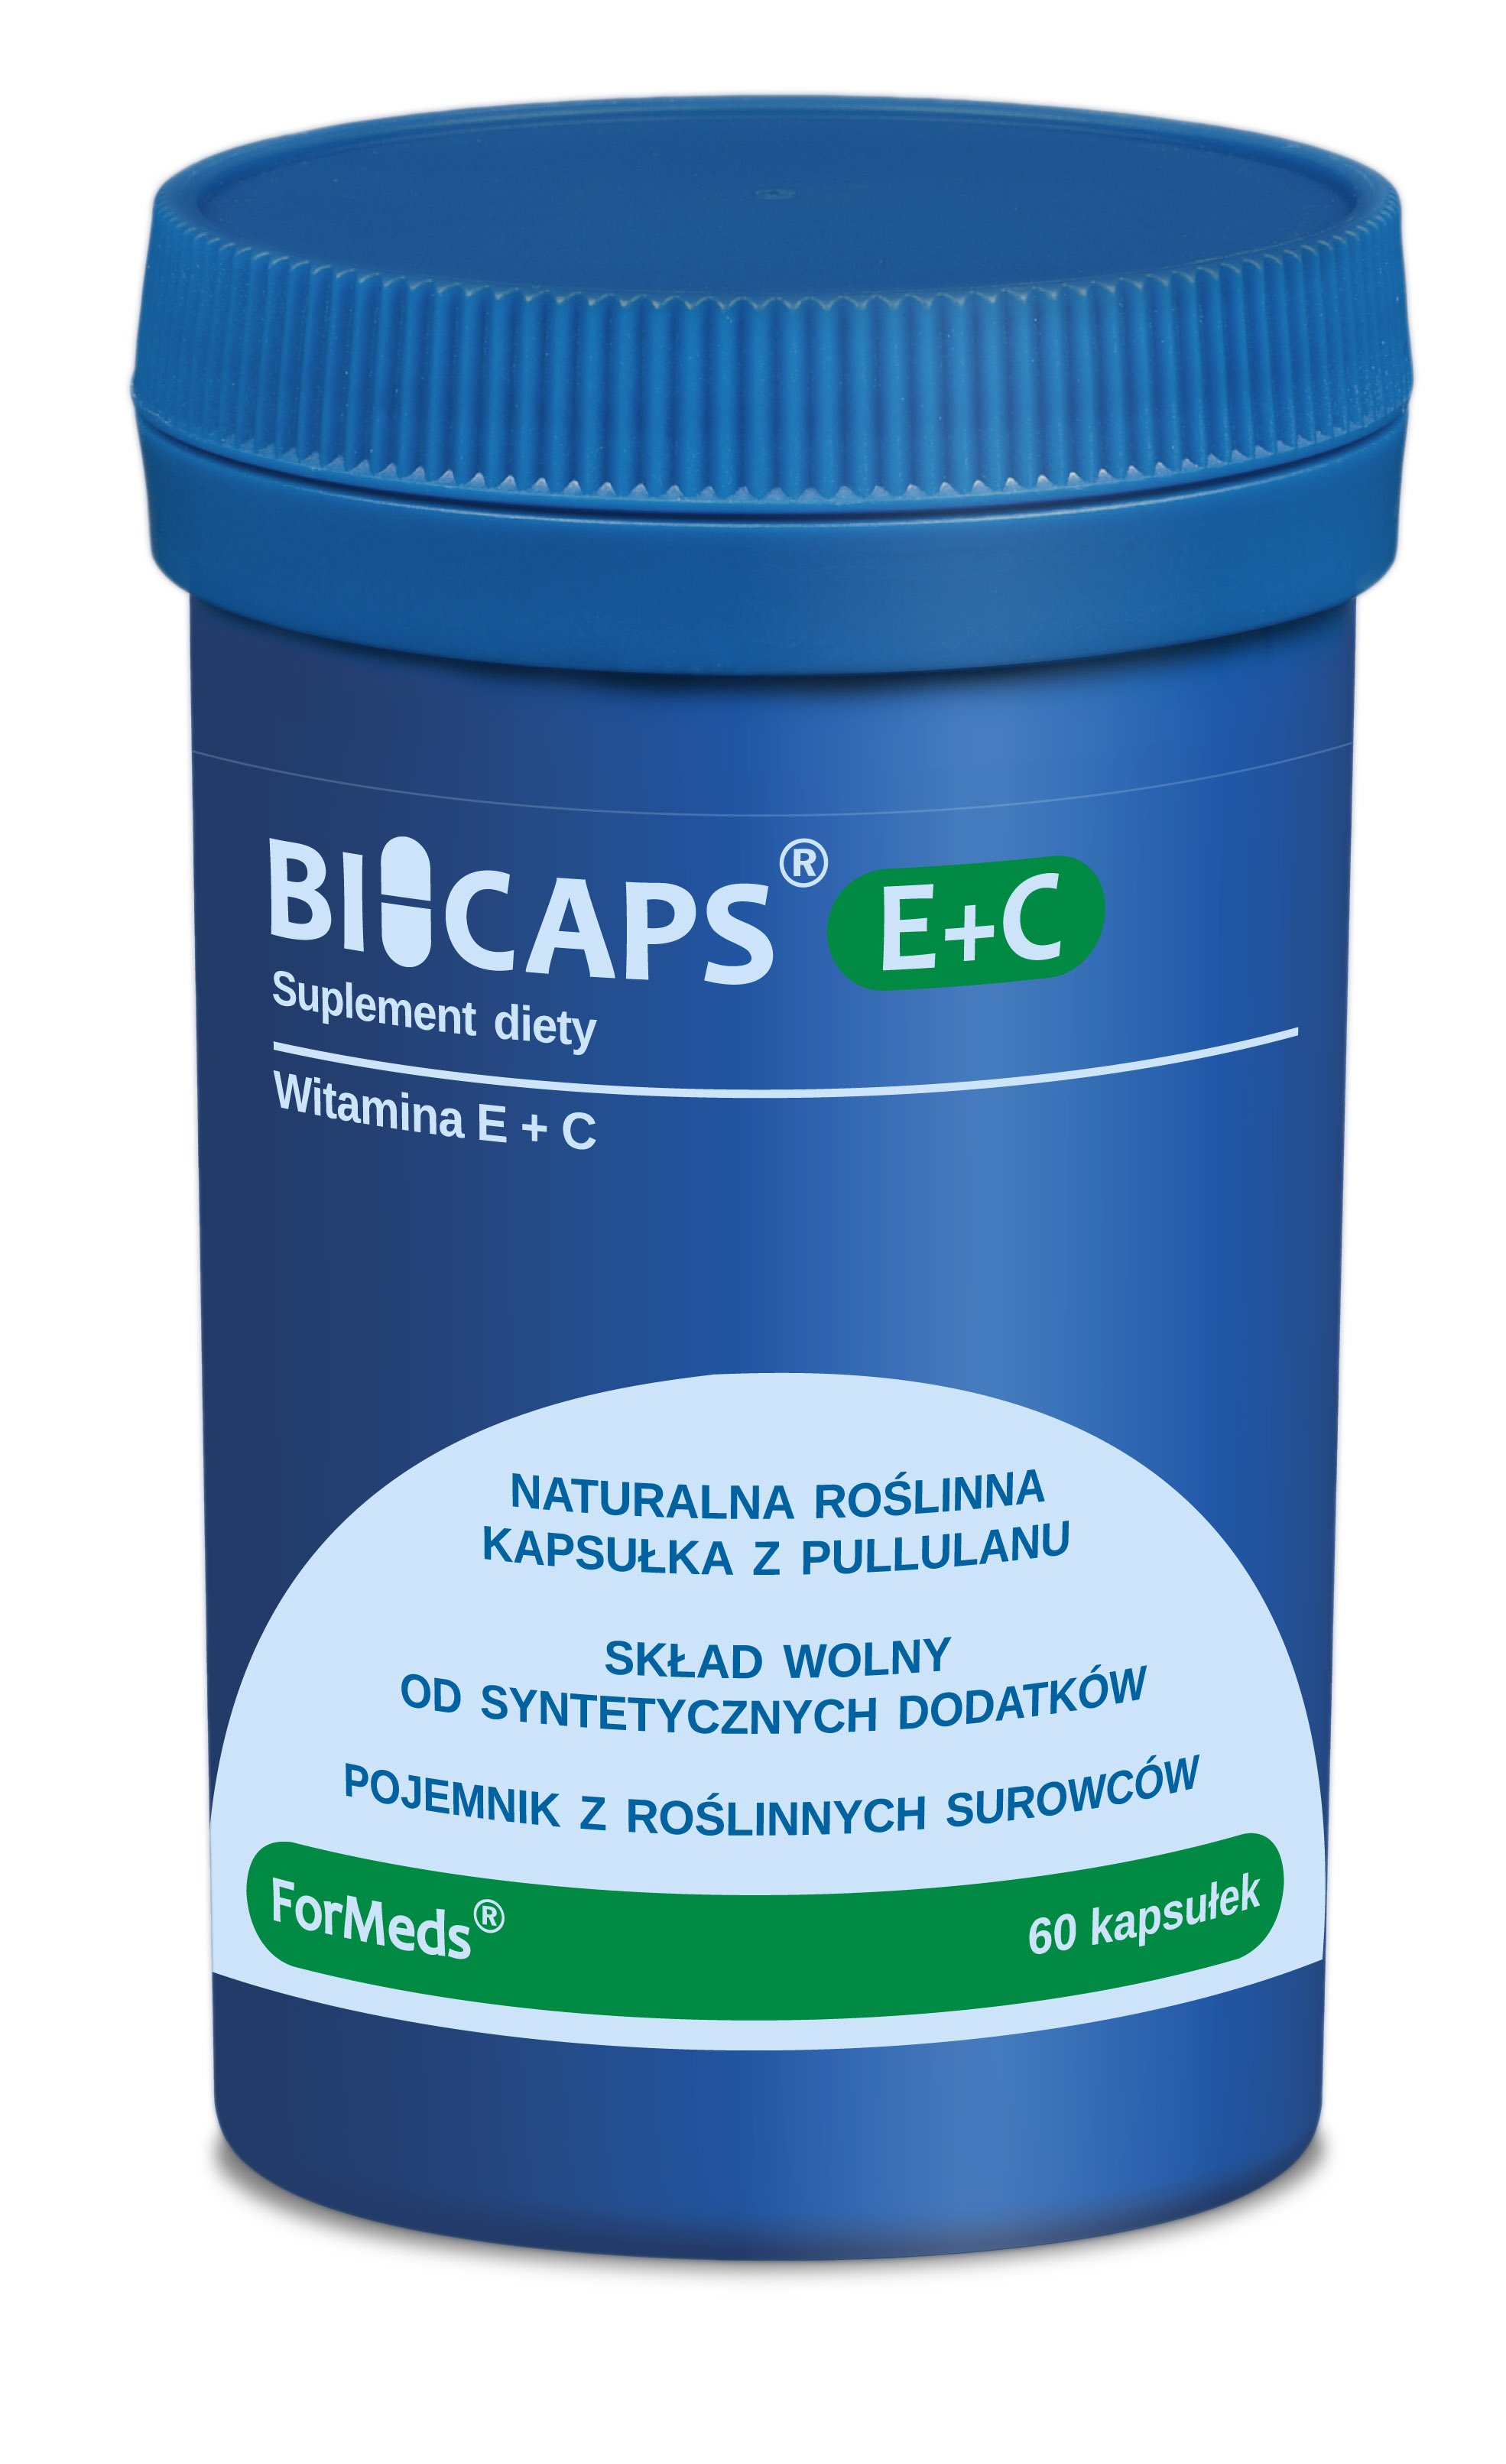 BICAPS® E+C